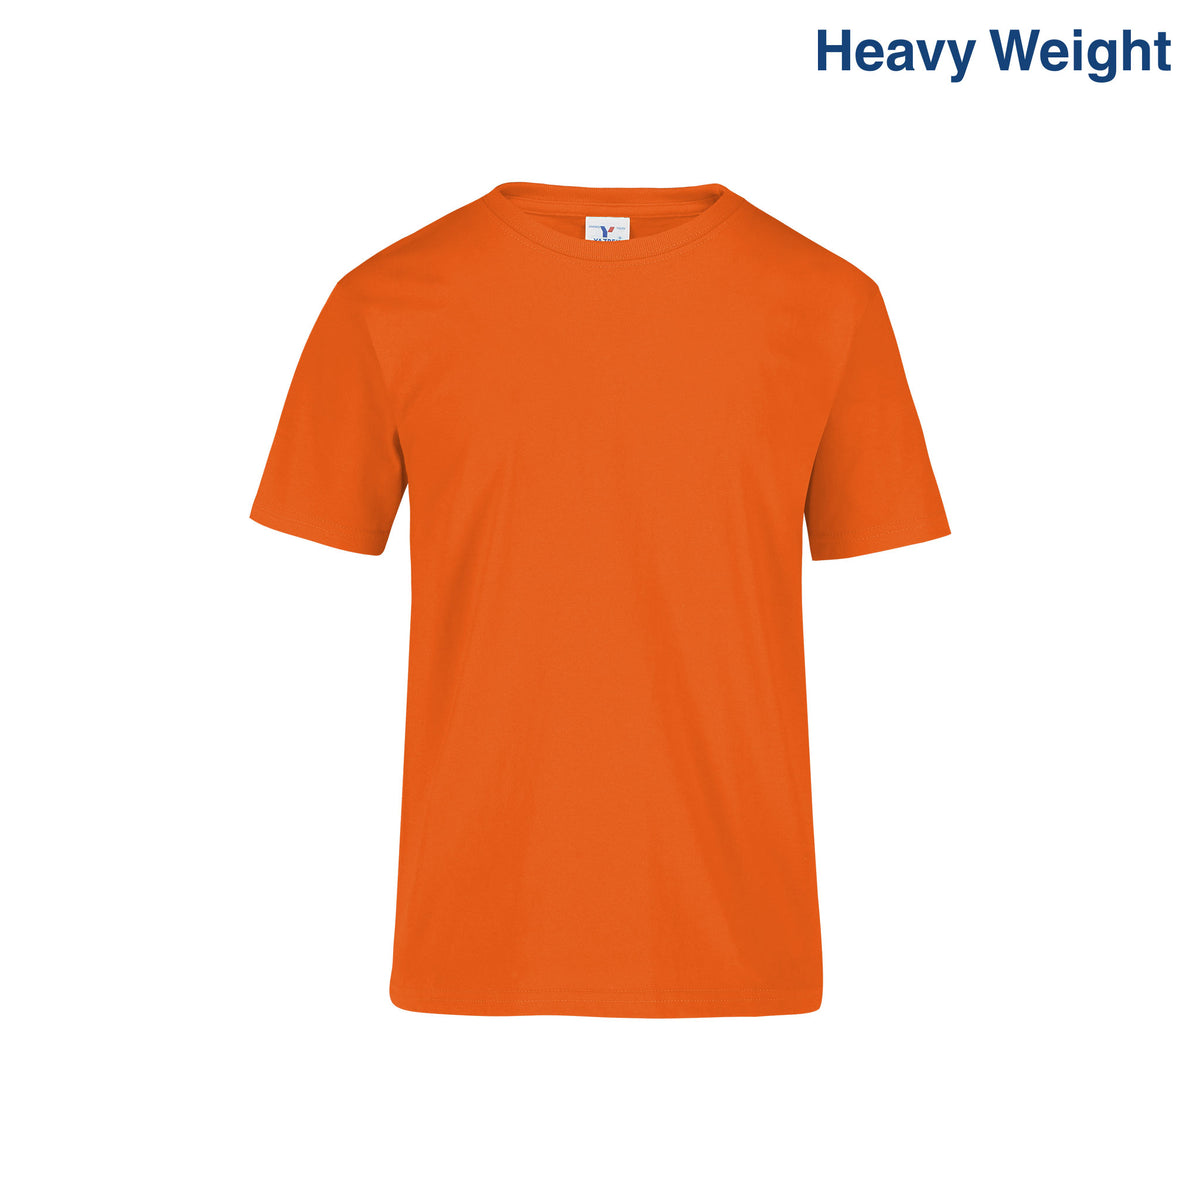 Youth’s Heavy Weight Crew Neck Short Sleeve T-Shirt (Orange) – Yazbek ...